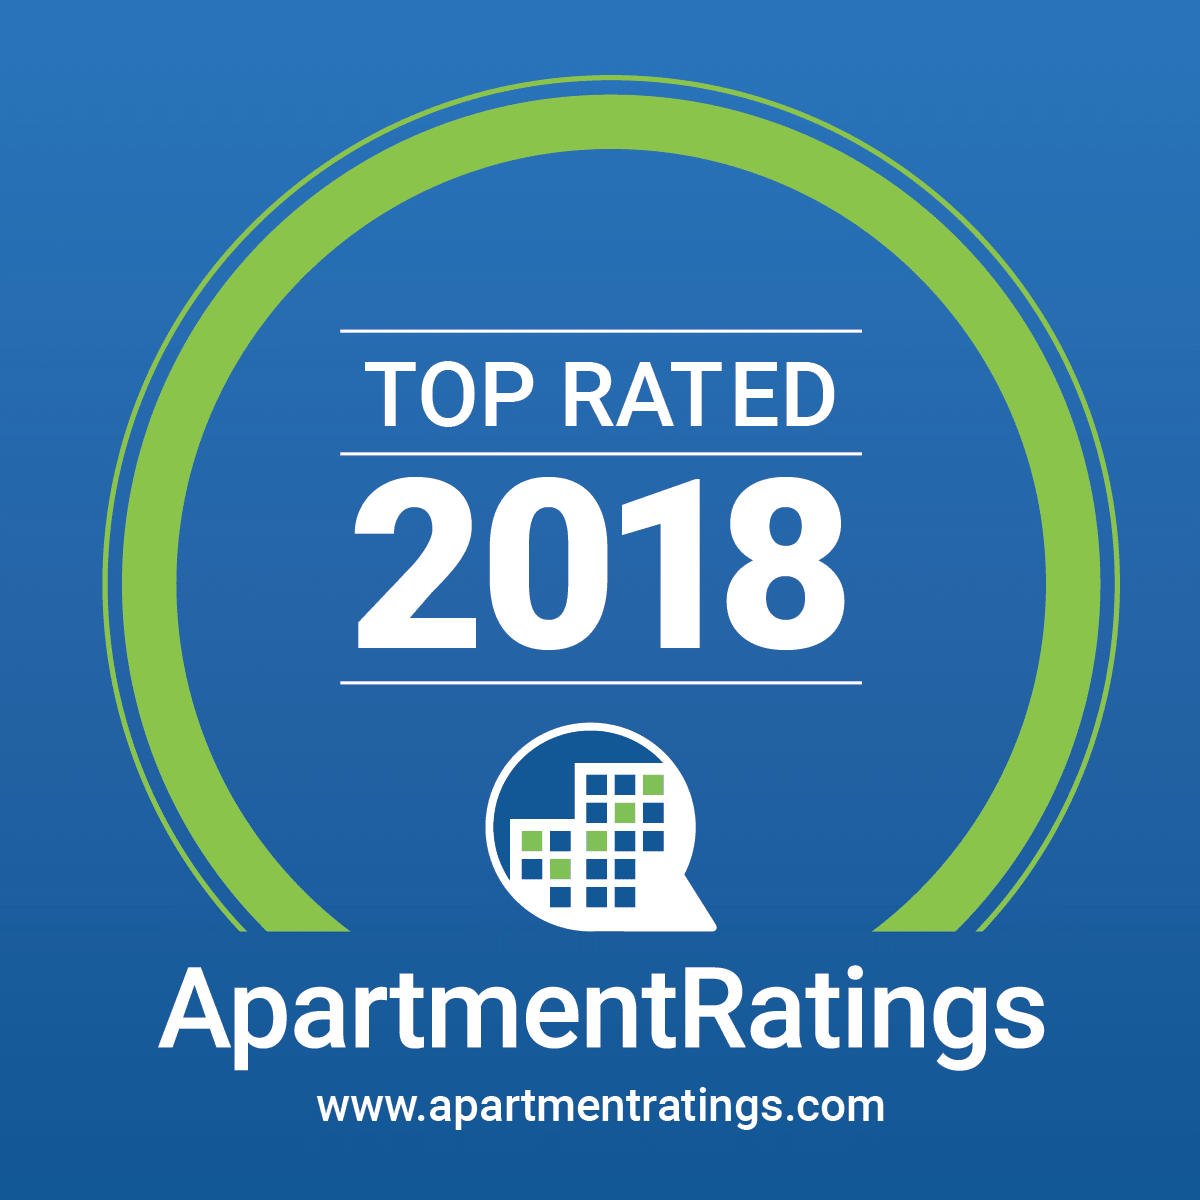 2018 top rated Apartments.com award grahic